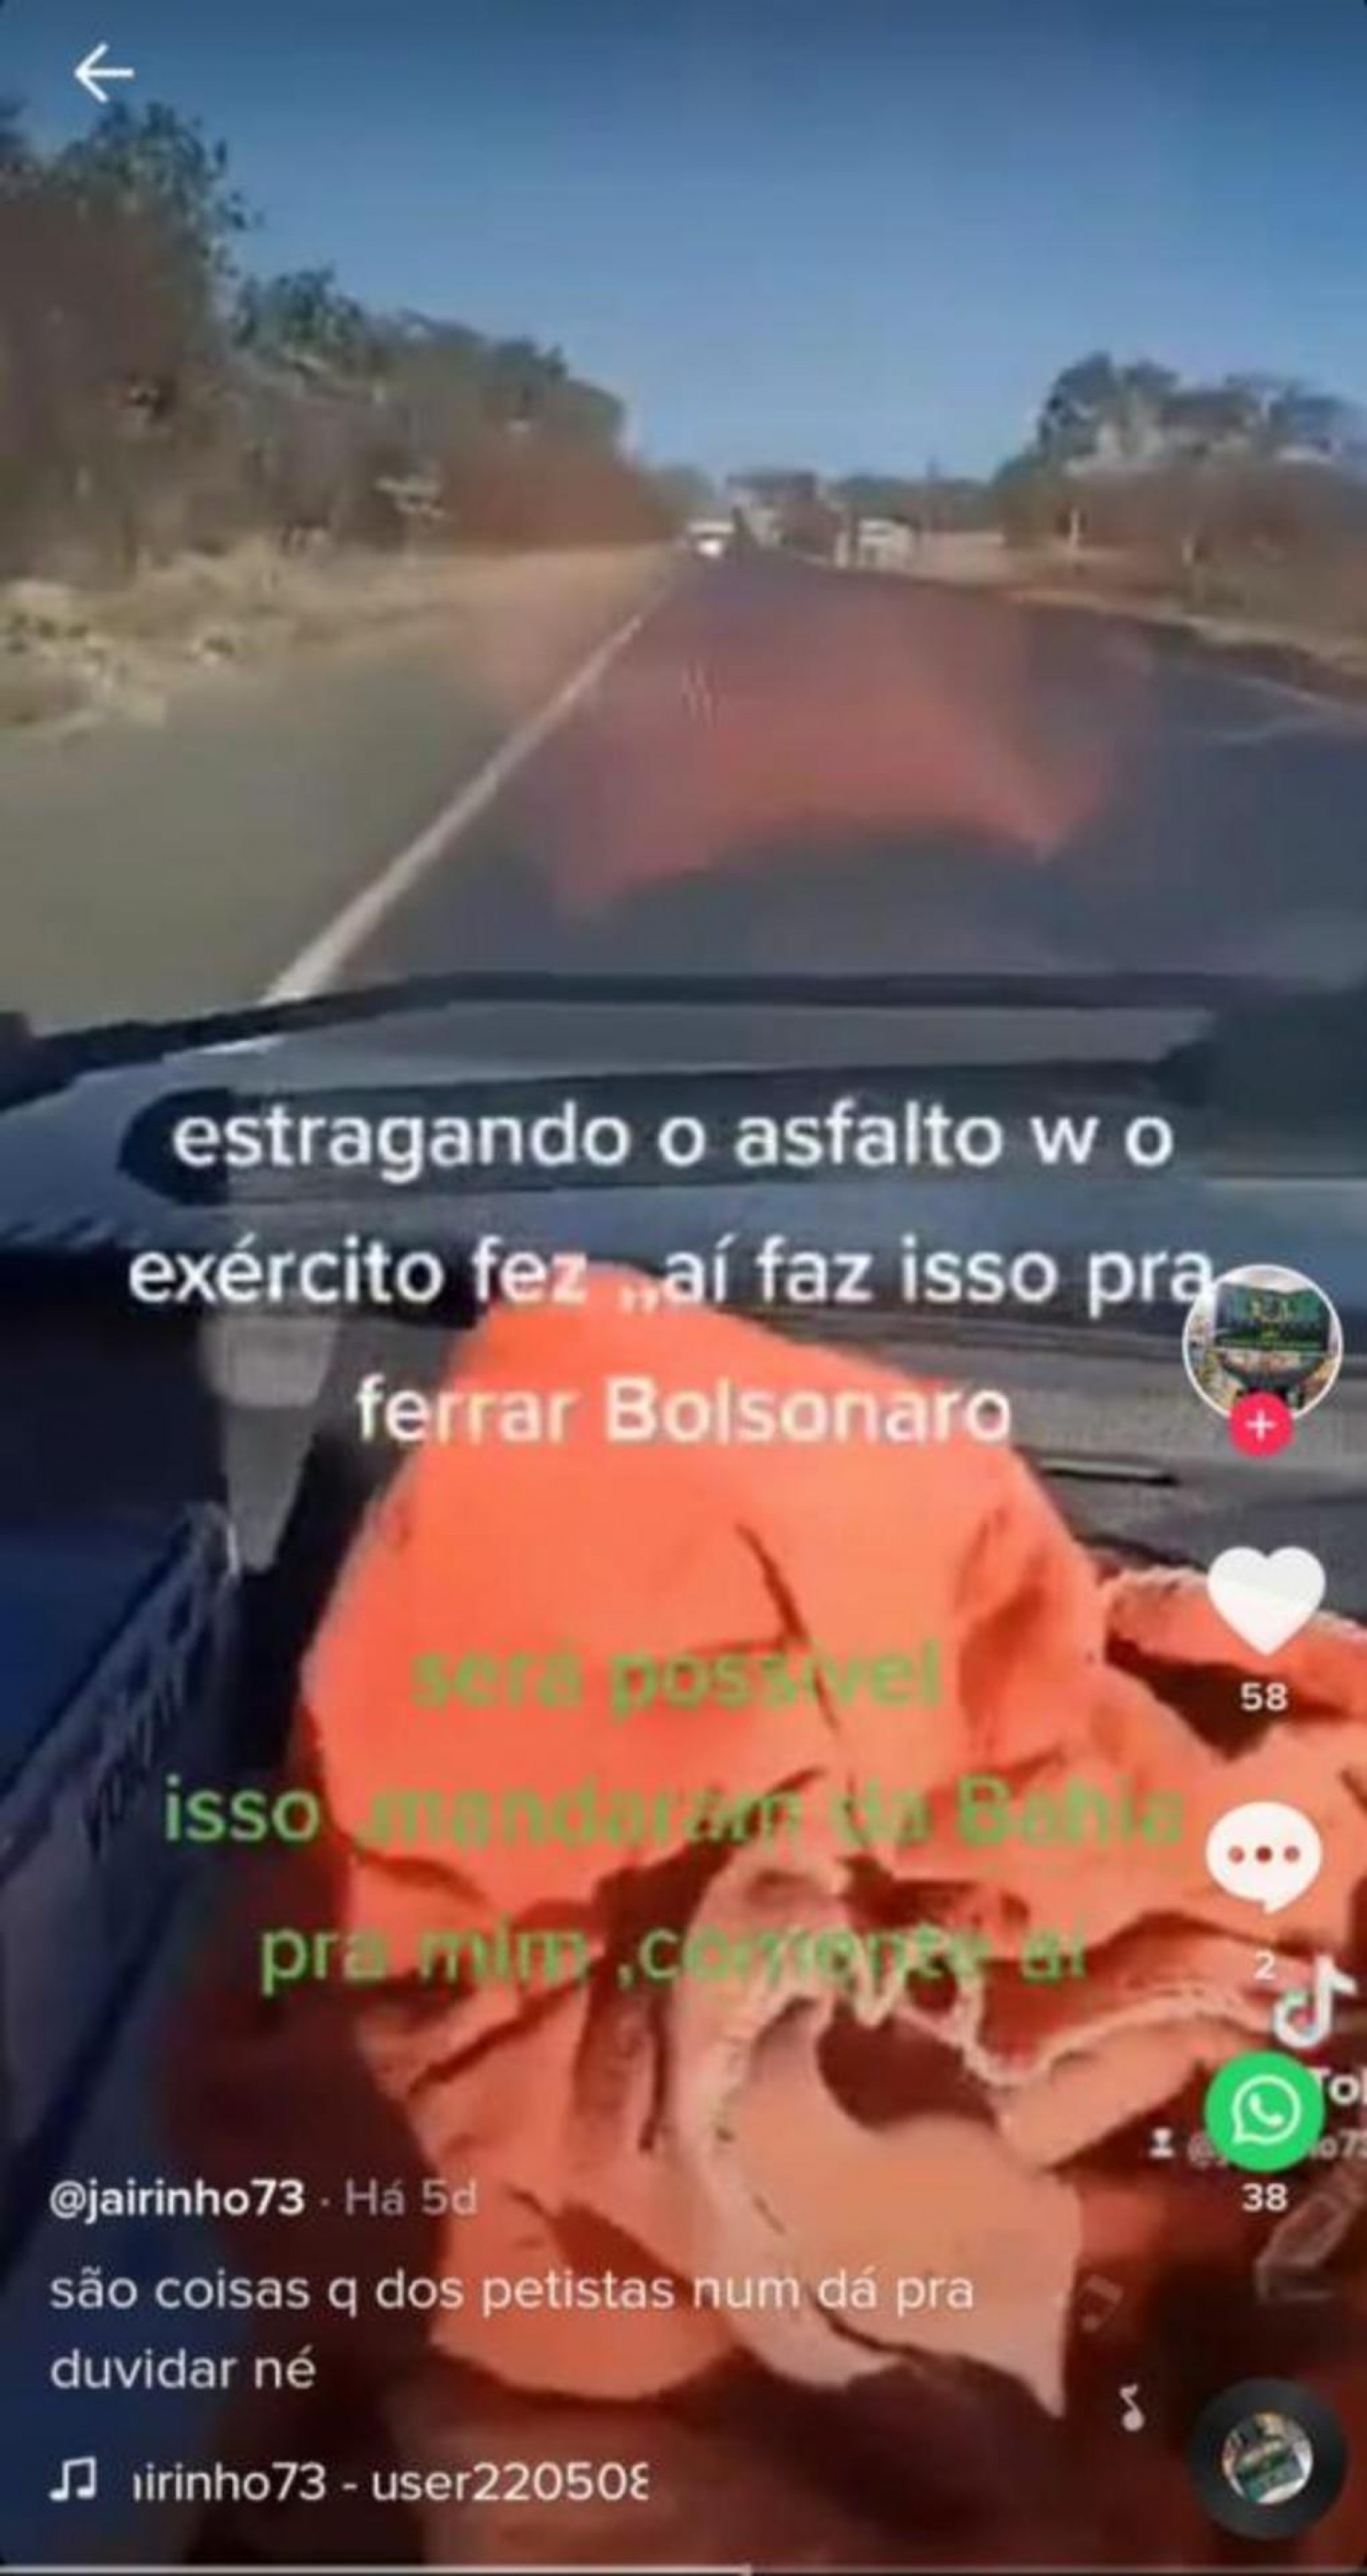 O vídeo insinua que a administração estadual da Bahia, do petista Rui Costa, quis danificar o asfalto para prejudicar o governo Bolsonaro. 